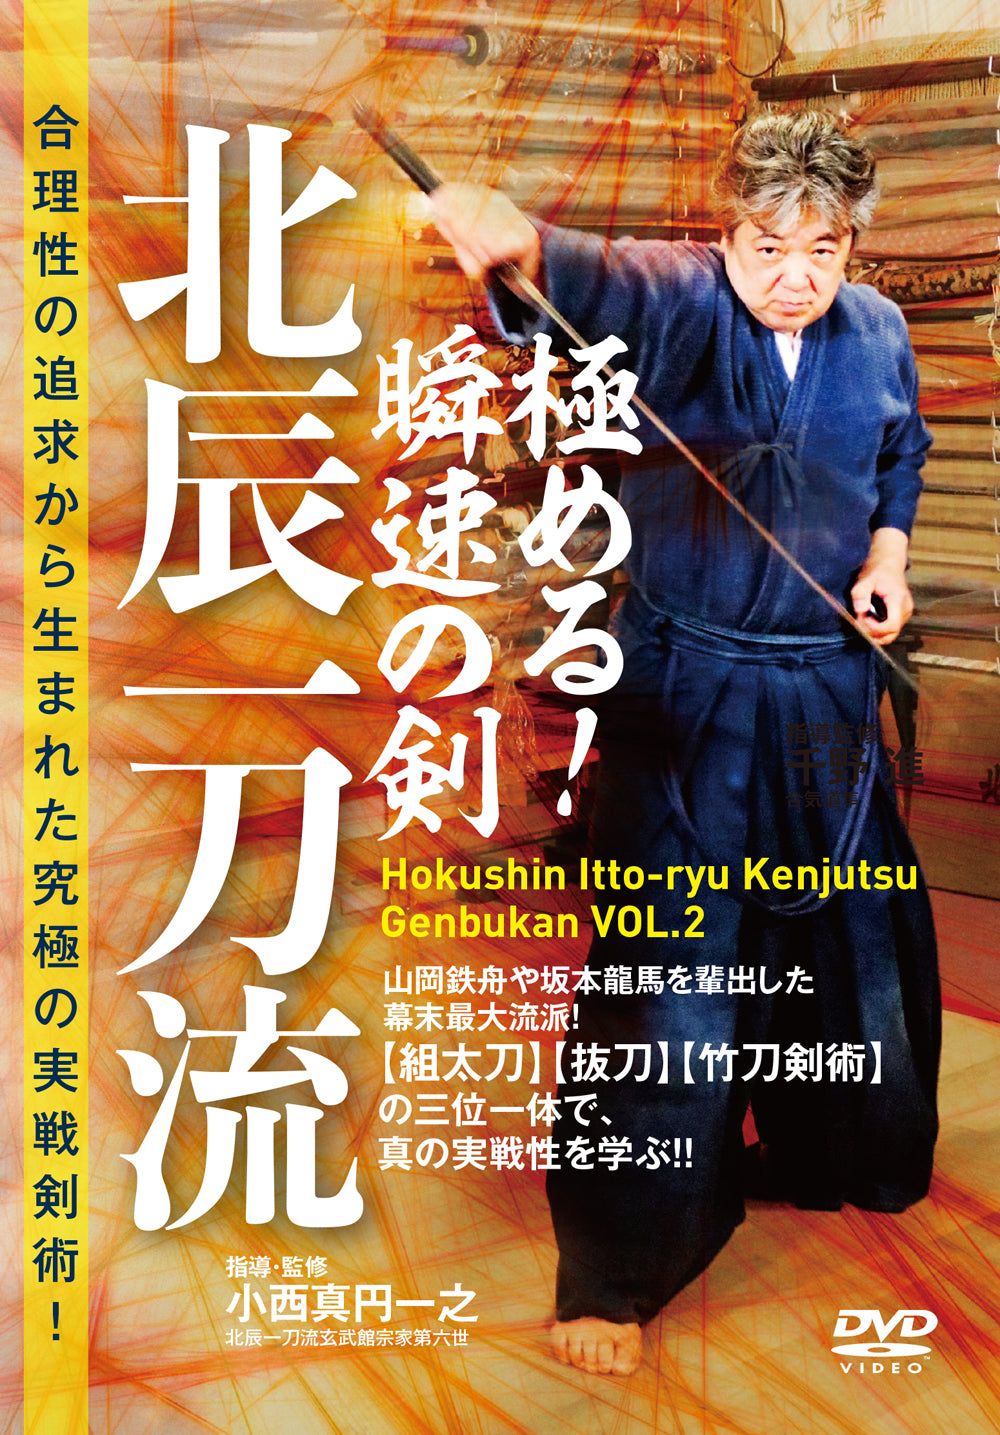 Hokushin Itto Ryu Kenjutsu Genbukan Vol 2 DVD de Shigejiro Konishi